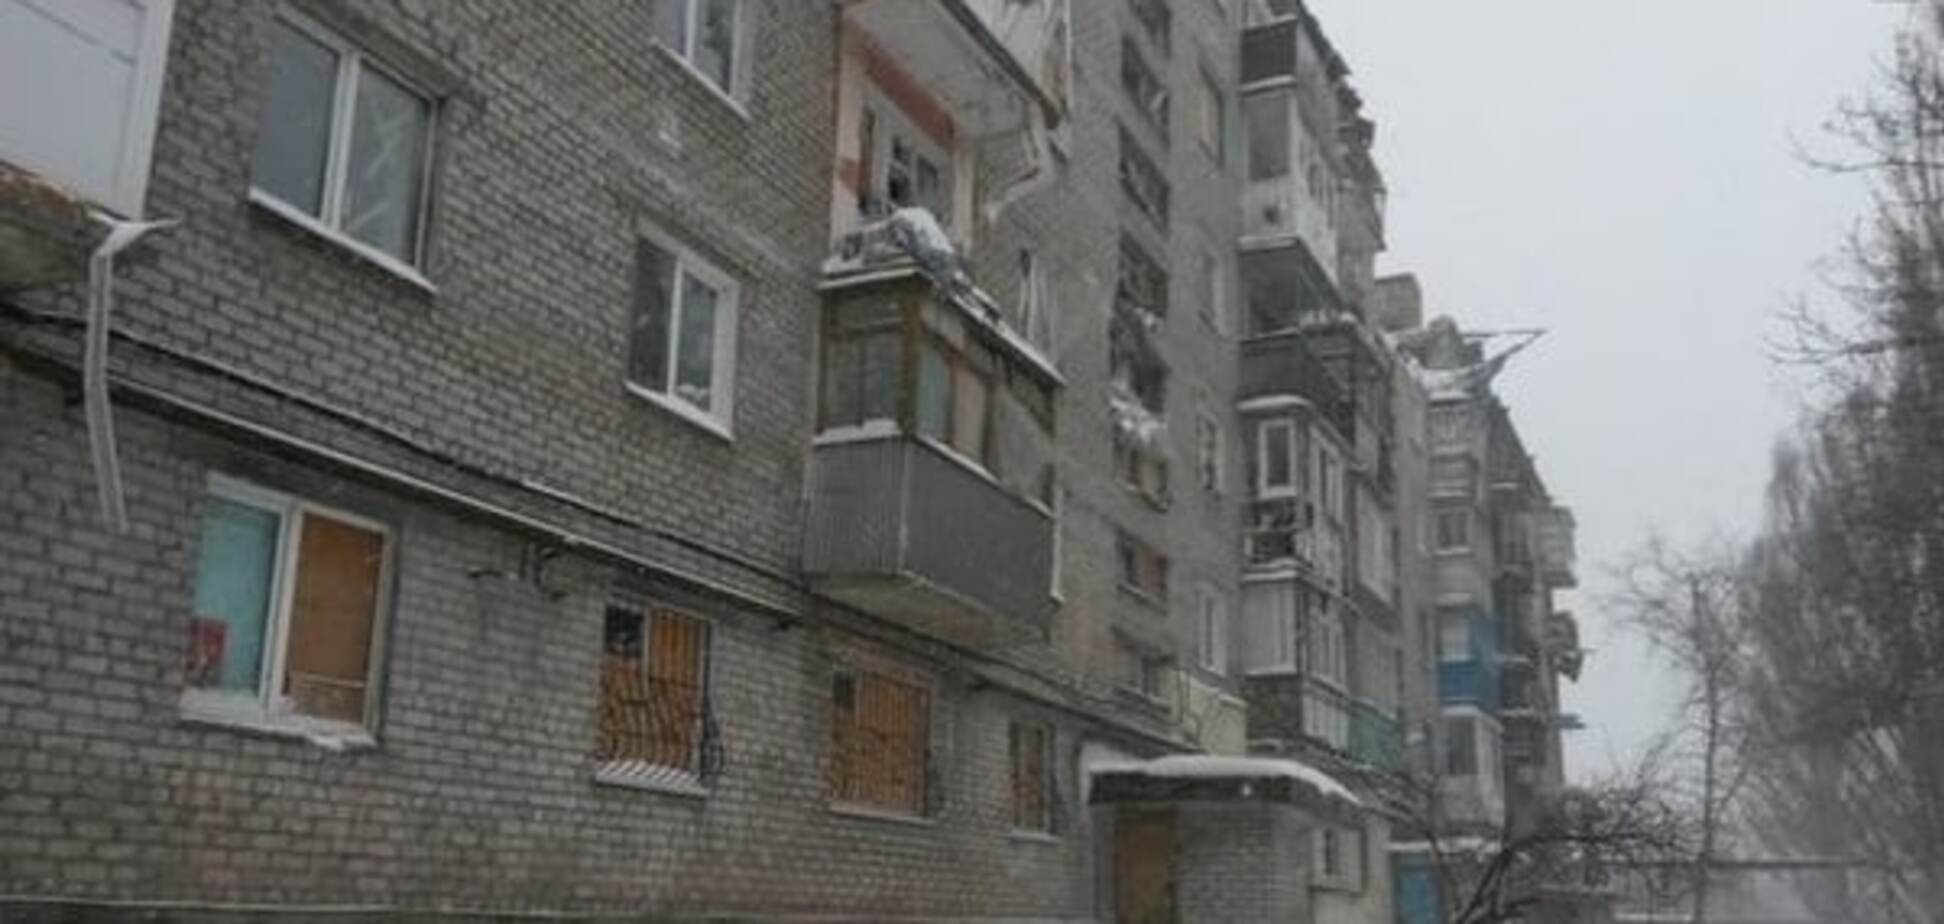 Будинки без дахів і крижані квартири: як виживають люди в розгромленому донецькому селищі. Фоторепортаж